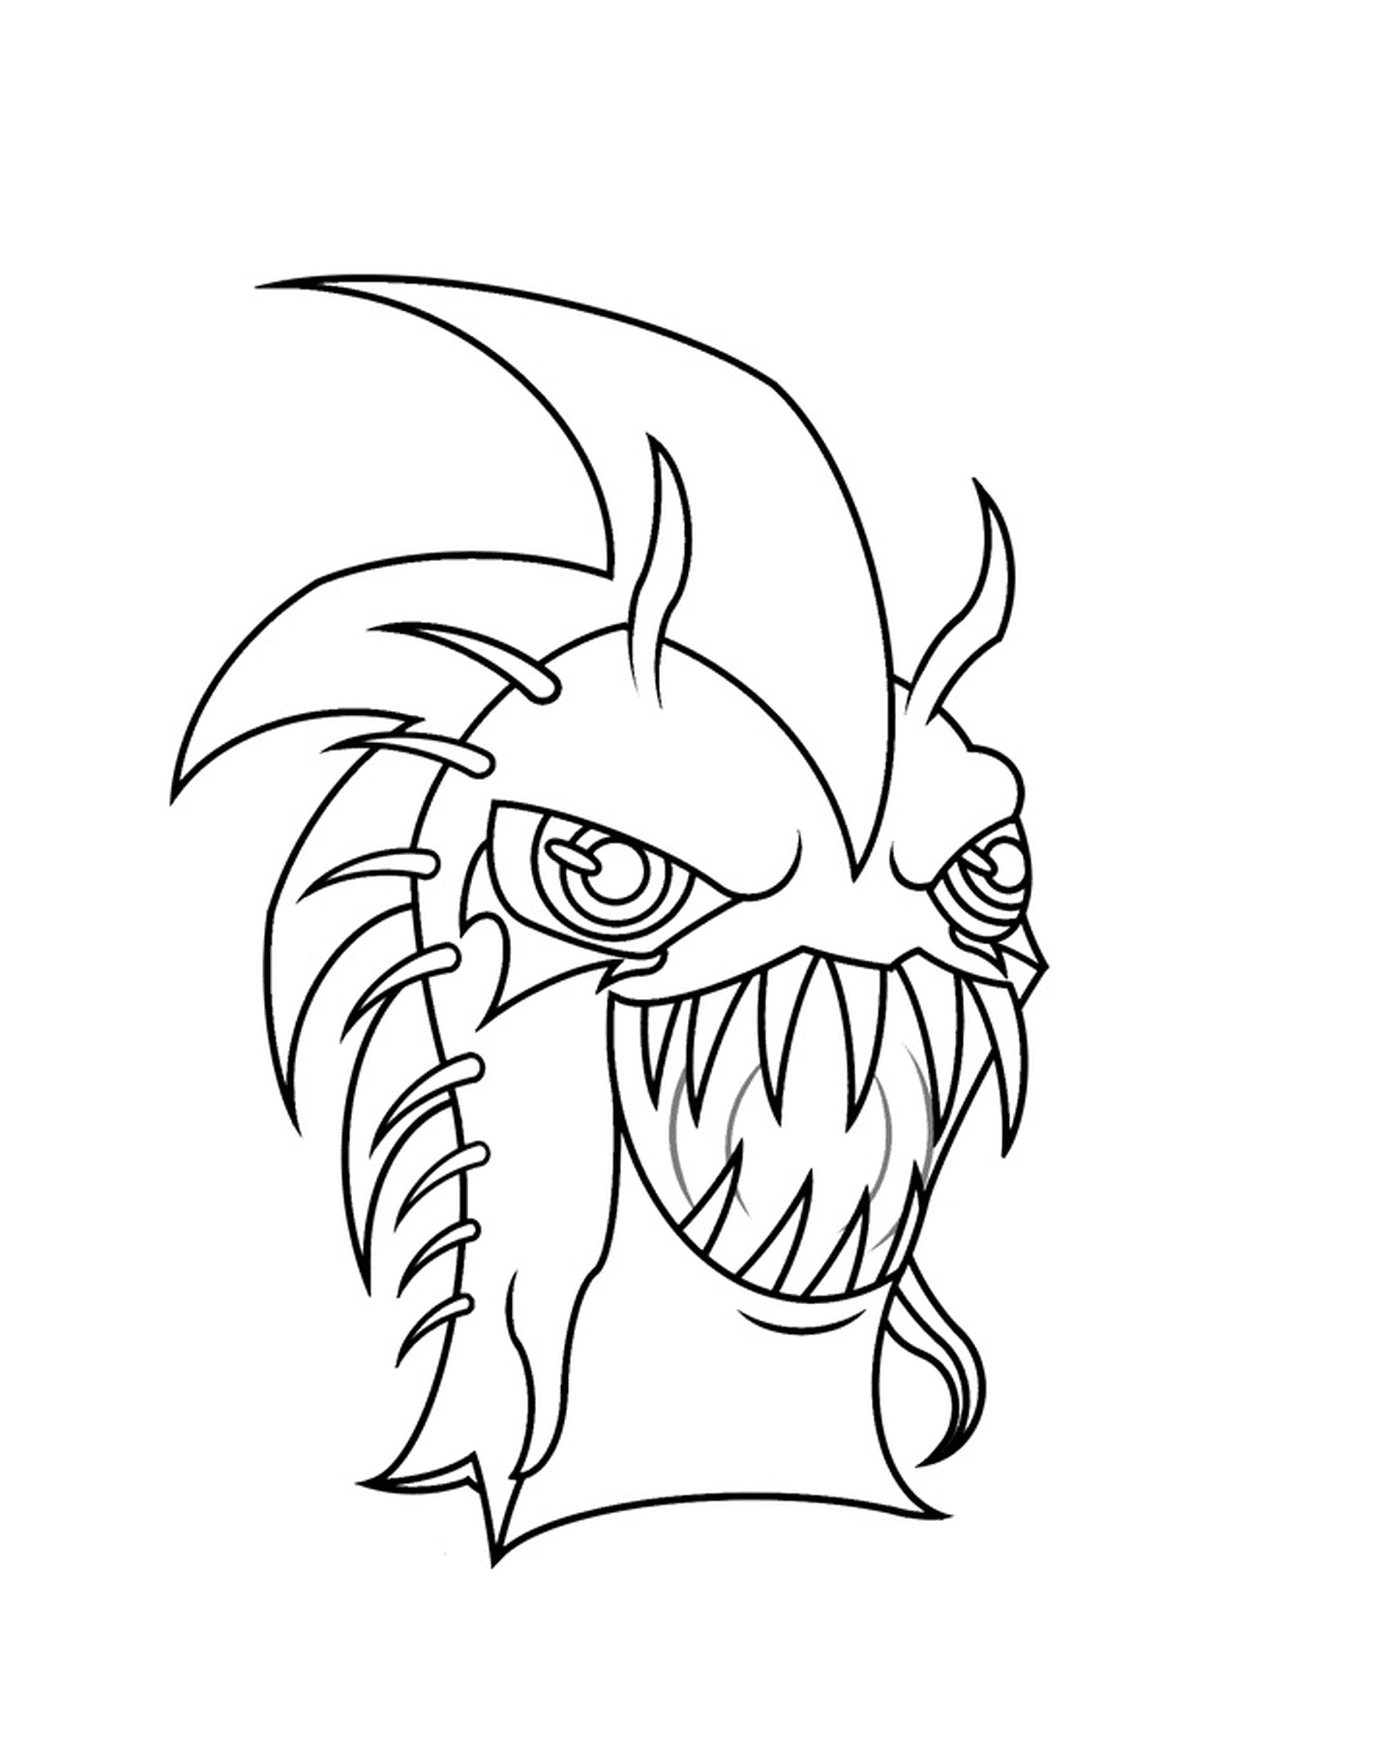  Urchin oscuro, monstruo con una gran boca 